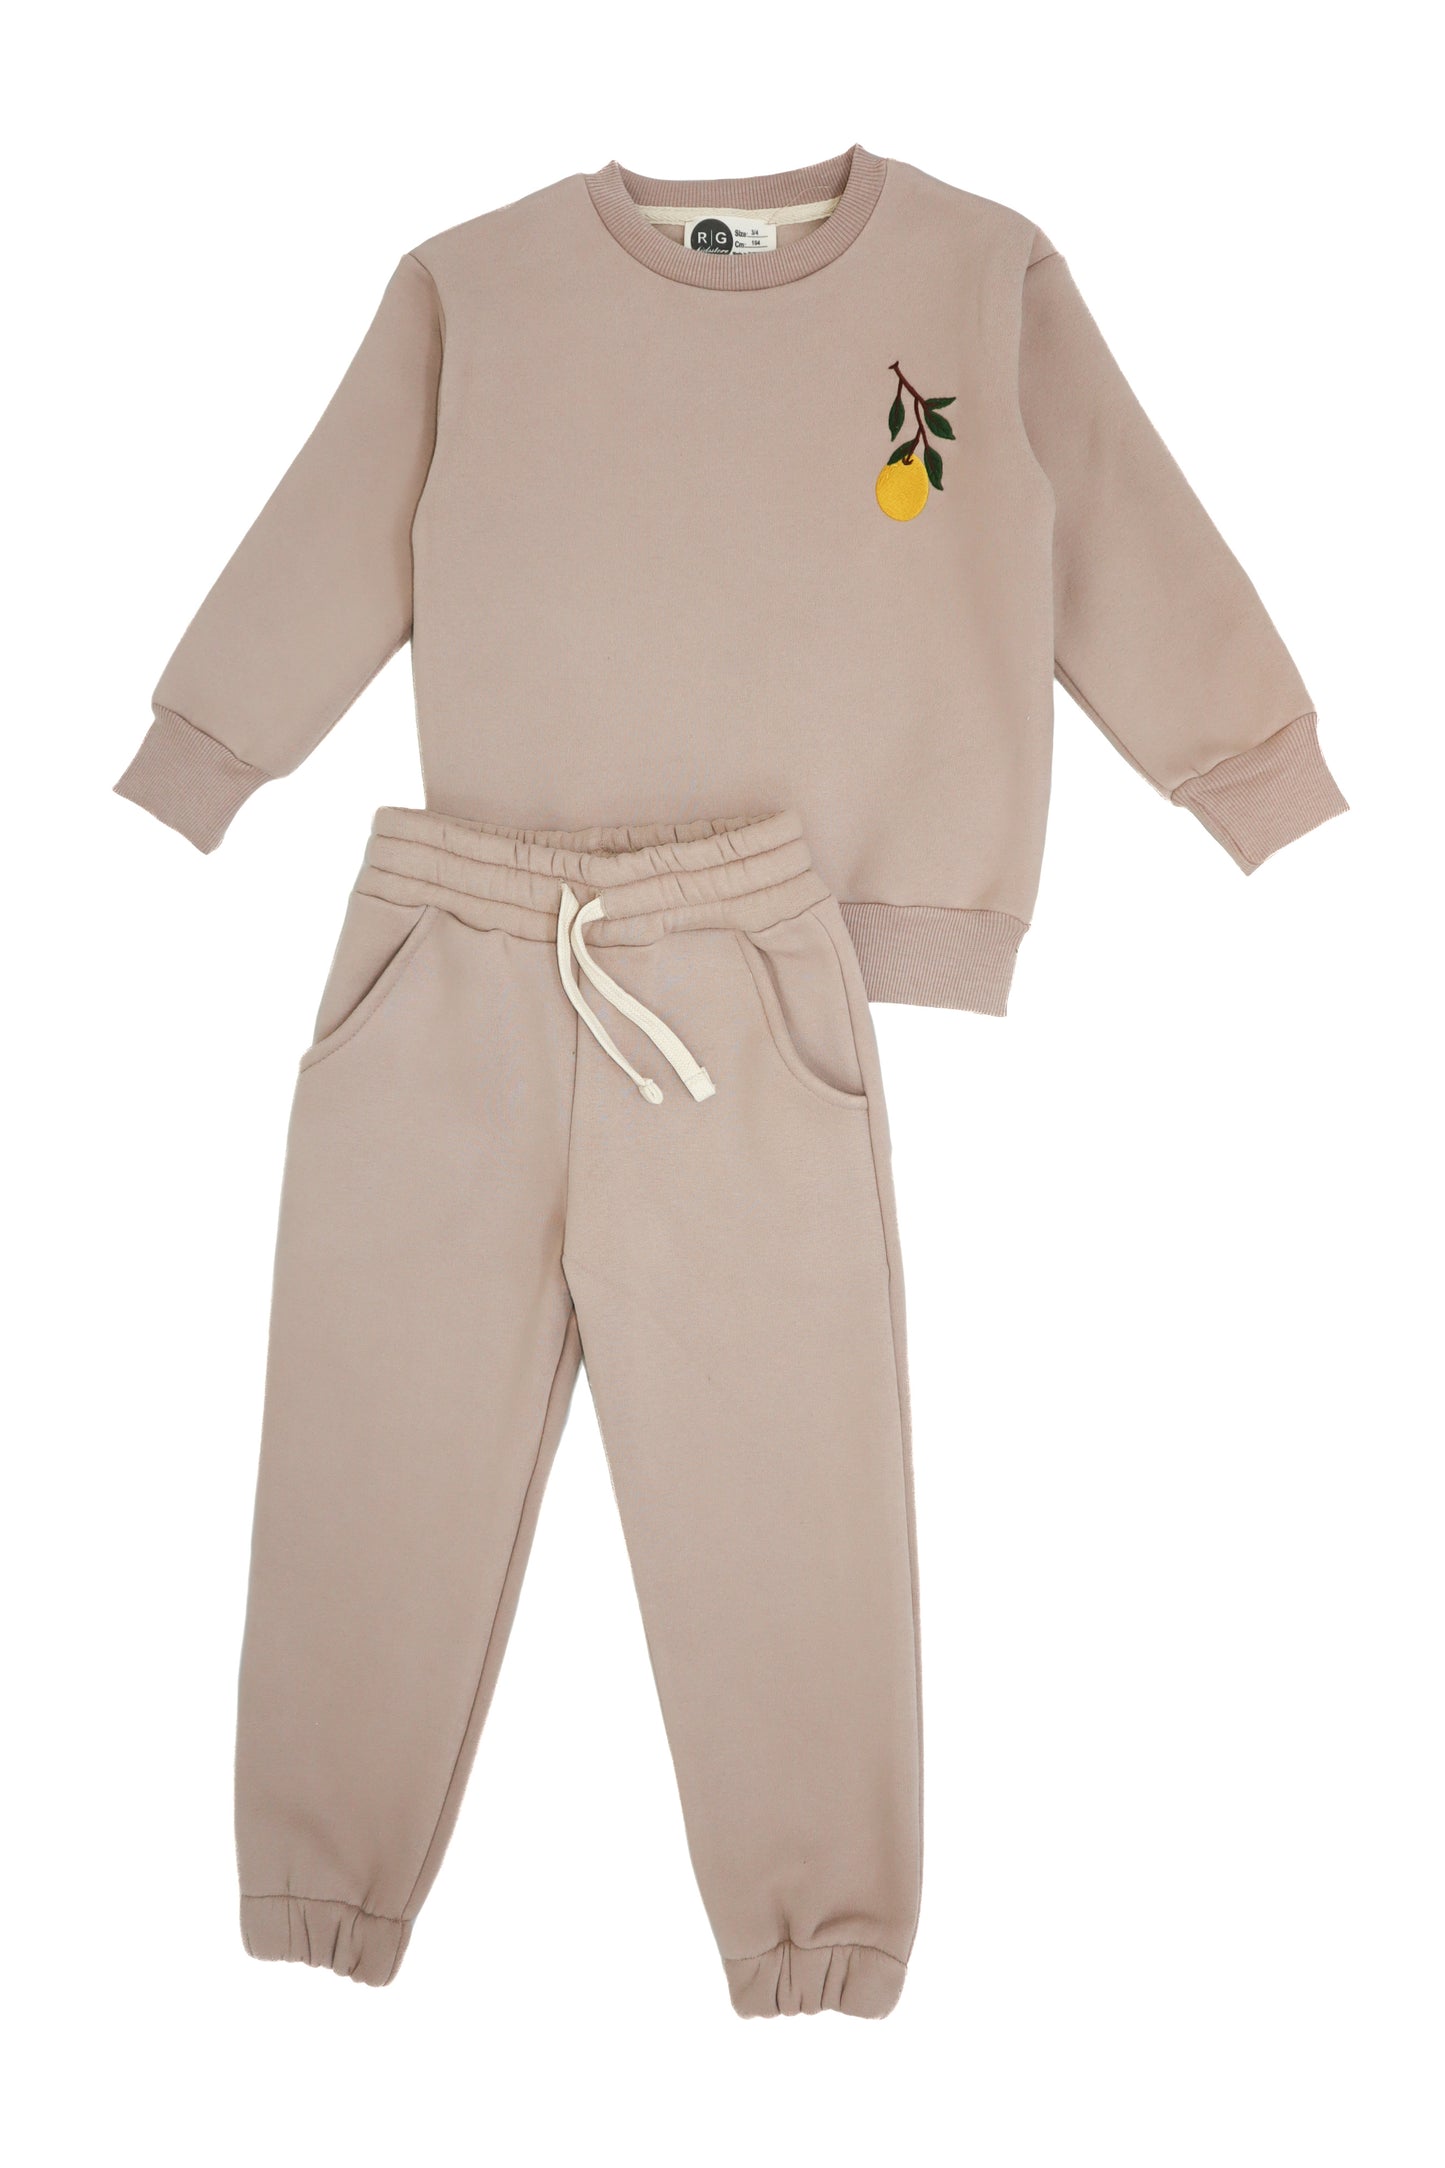 Детский комплект спортивного костюма и спортивного костюма с подробной вышивкой «Натуральный лимон»